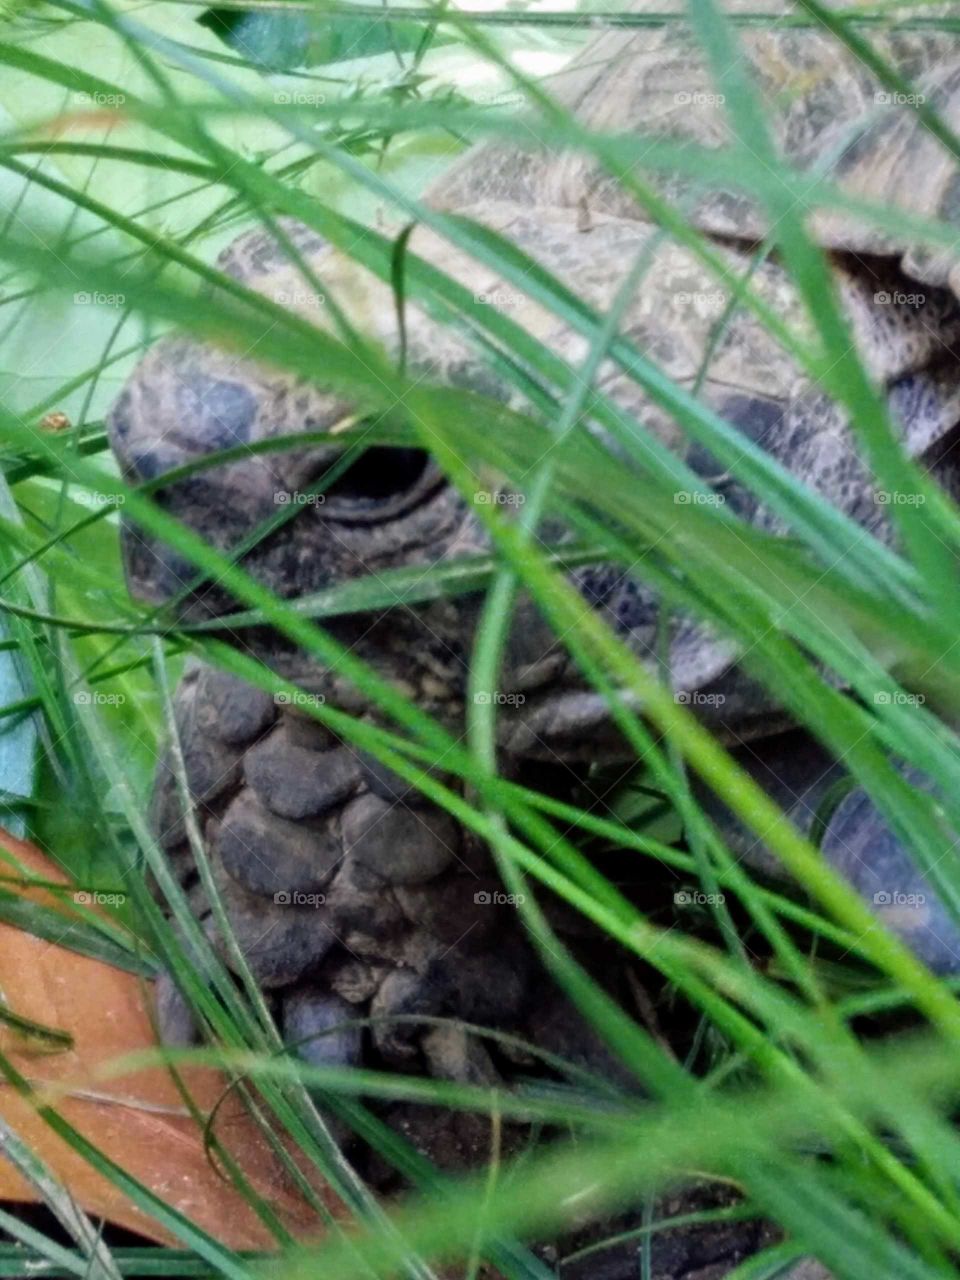 Turtle selfie between the garden grass